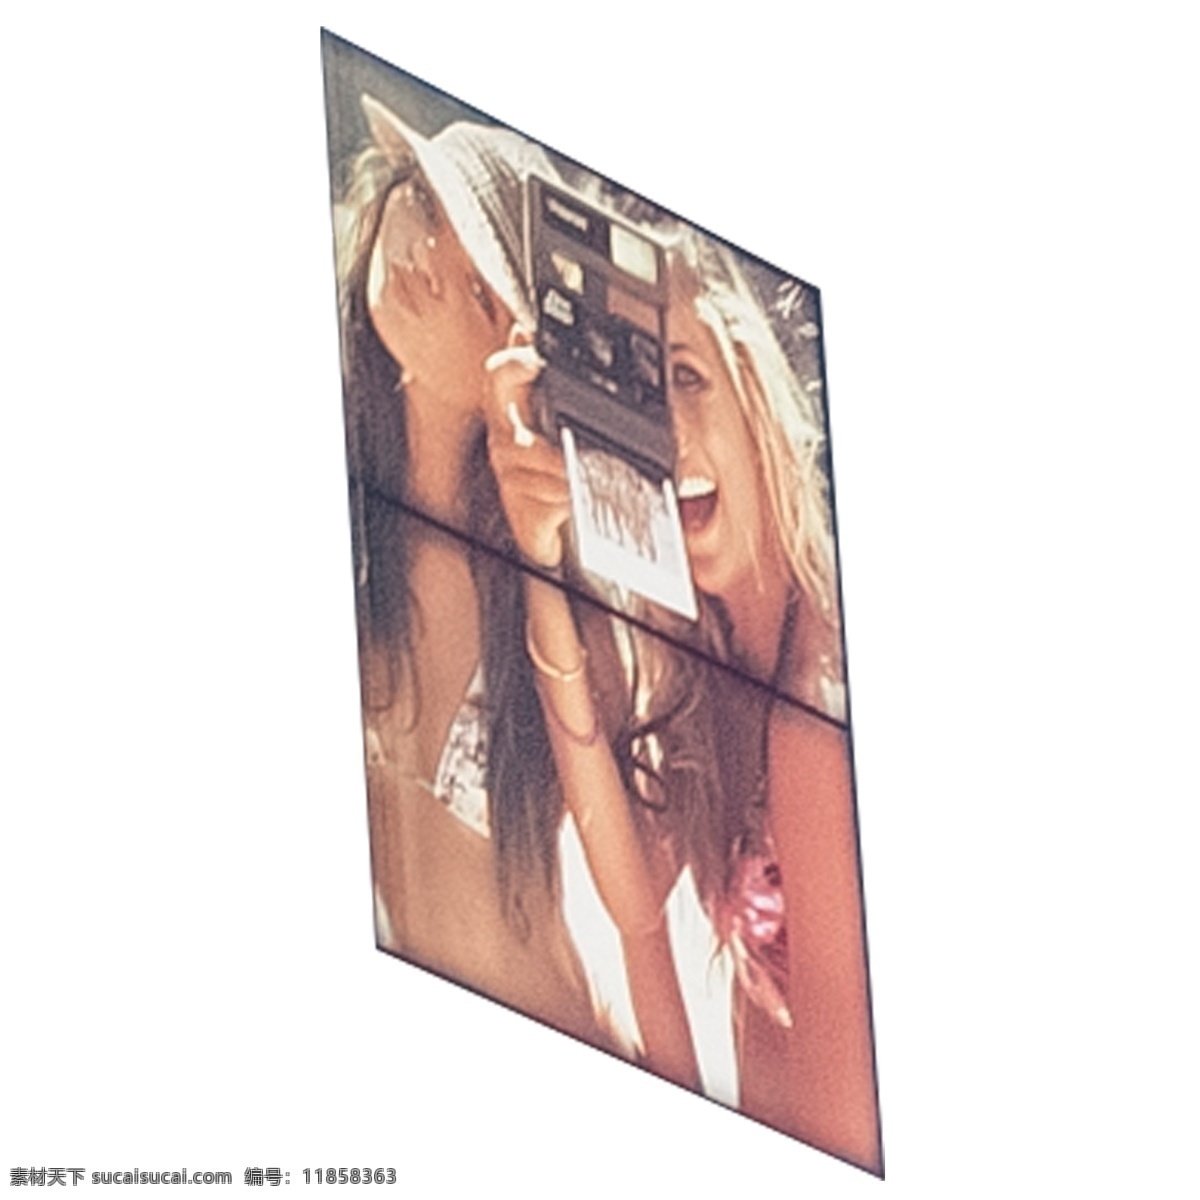 纪念 画册 两个 美女 相机 拍摄 画 贴画 墙画 广告画 宣传画 广告宣传画 墙体宣传画